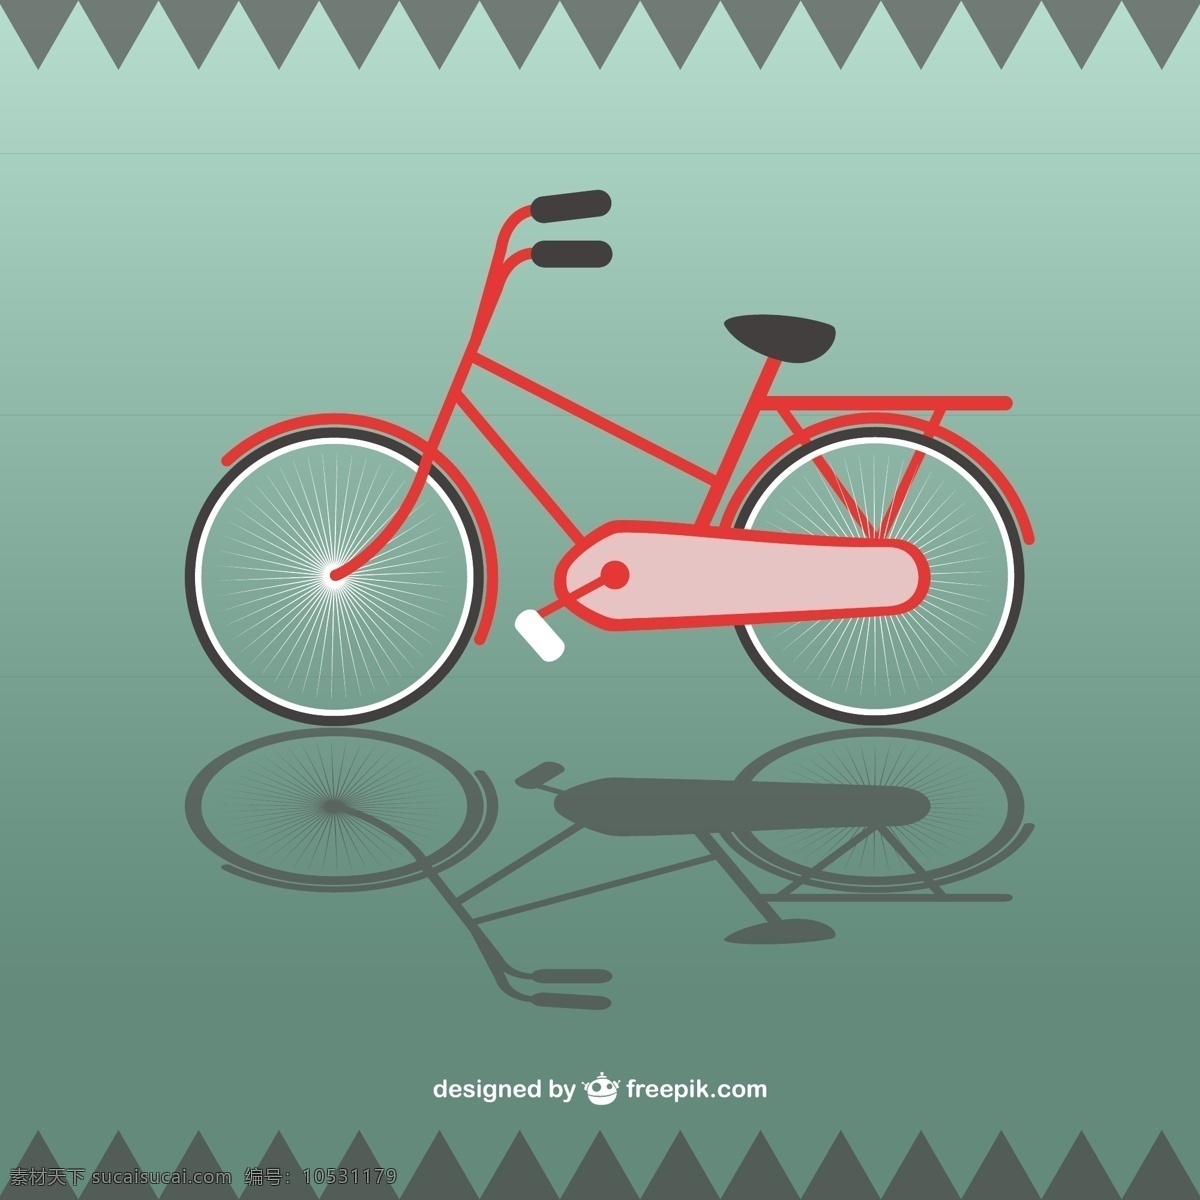 矢量单车 自行车 剪影自行车 单车剪影 车 单车 bicycle 自行车海报 矢量背景 背景 post 海报 老式单车 矢量图片 矢量素材 其他矢量 矢量